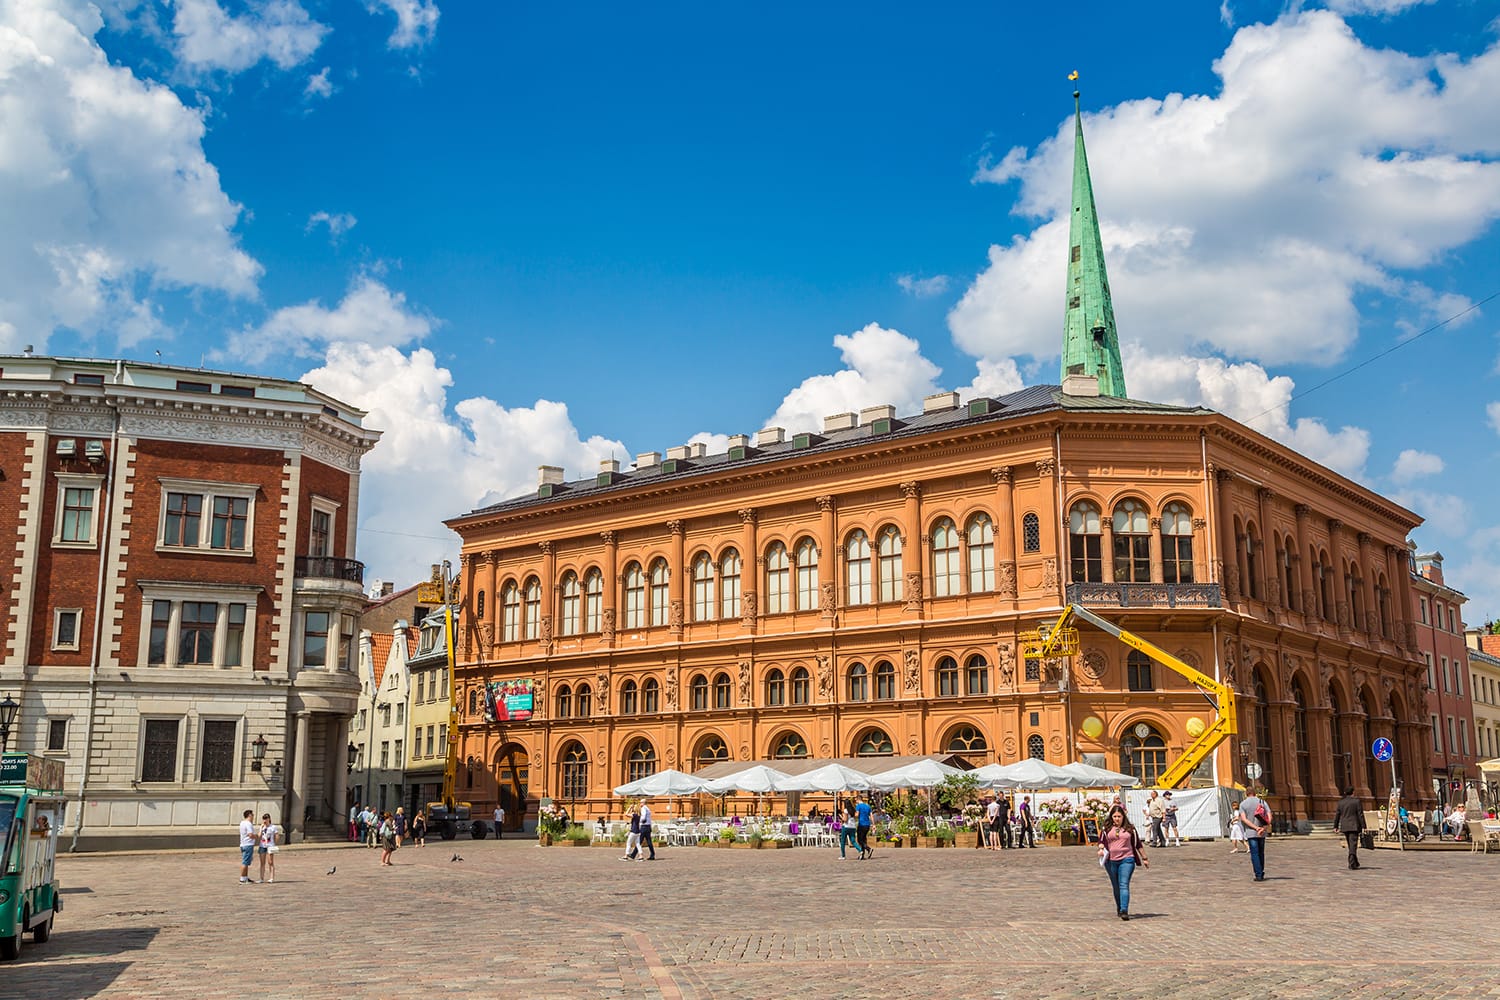 Bourse Art Museum on Dome Square in Riga, Latvia